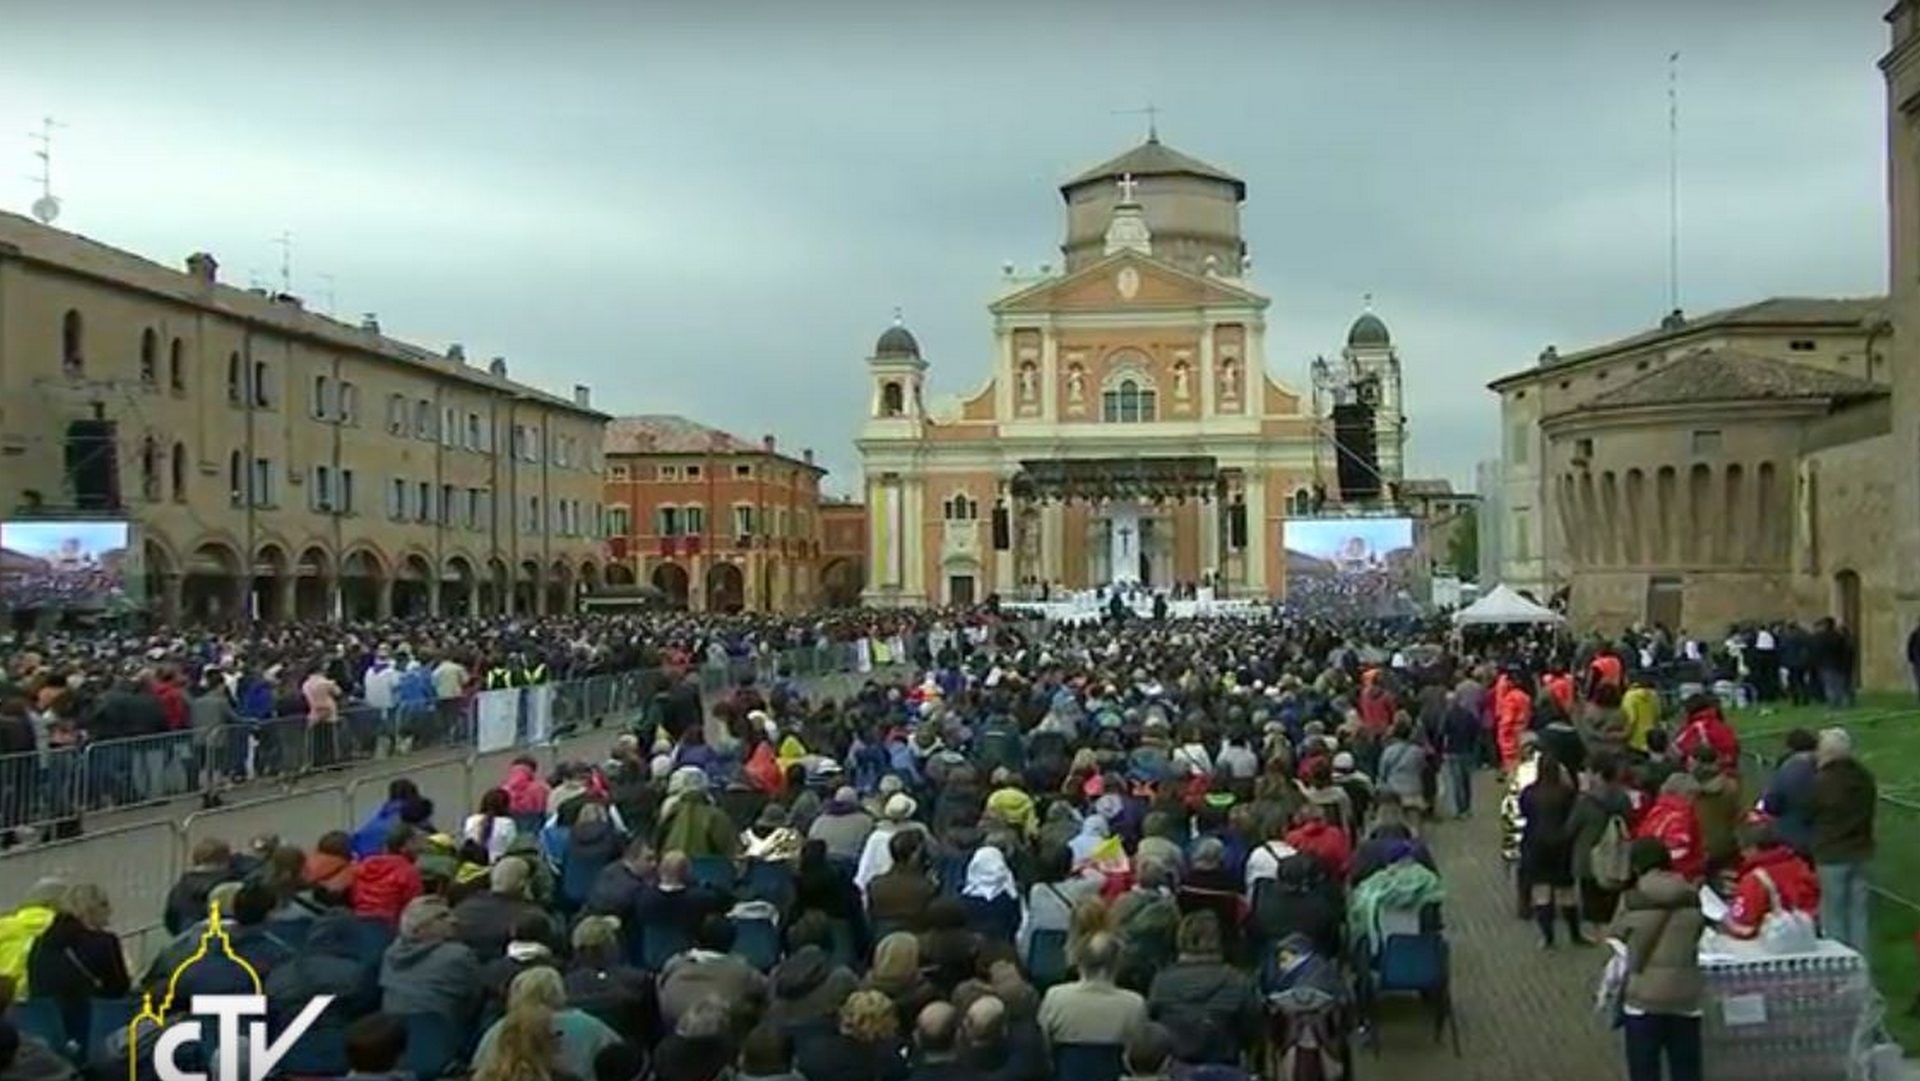 Le pape célèbre la messe sur le parvis de la cathédrale de Carpi, en Emilie-Romagne (capture d'écran CTV)